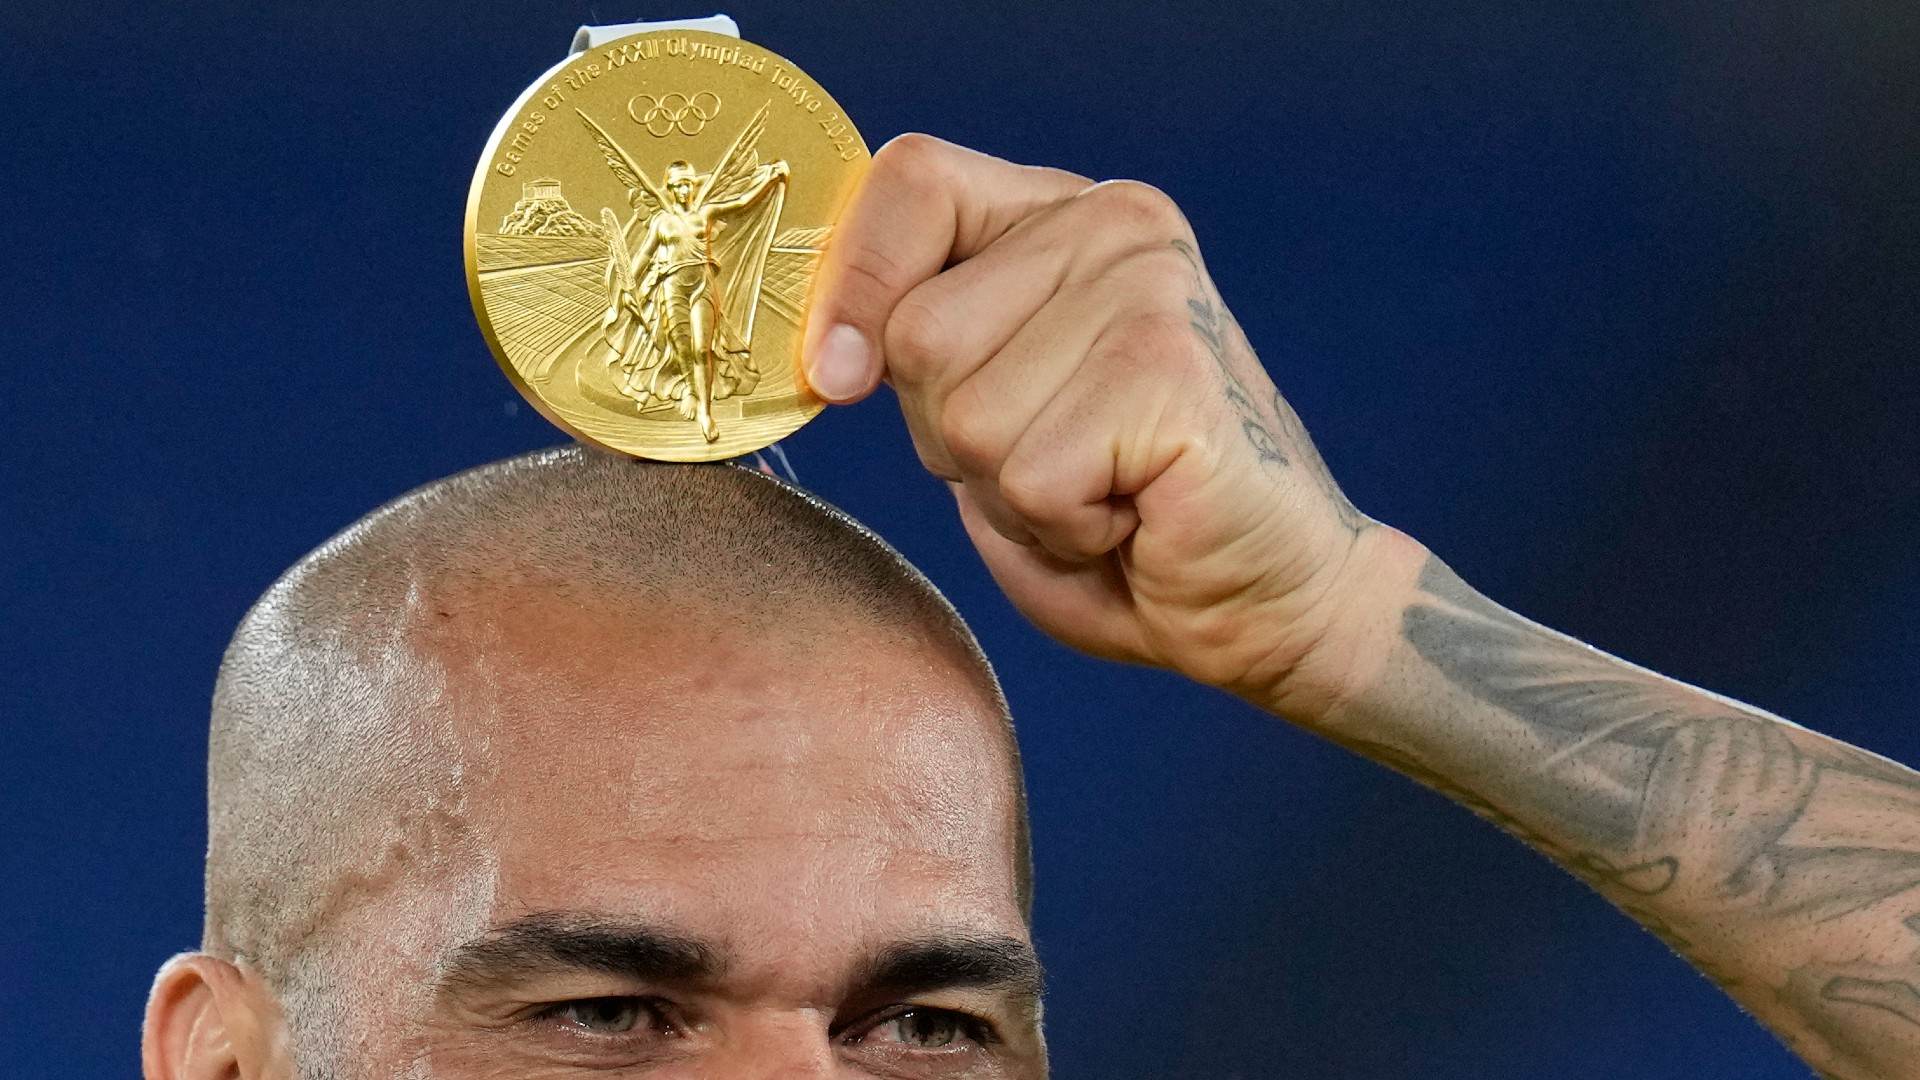 Dani Alves tira foto com medalha de ouro sobre a cabeça após conquista olímpica